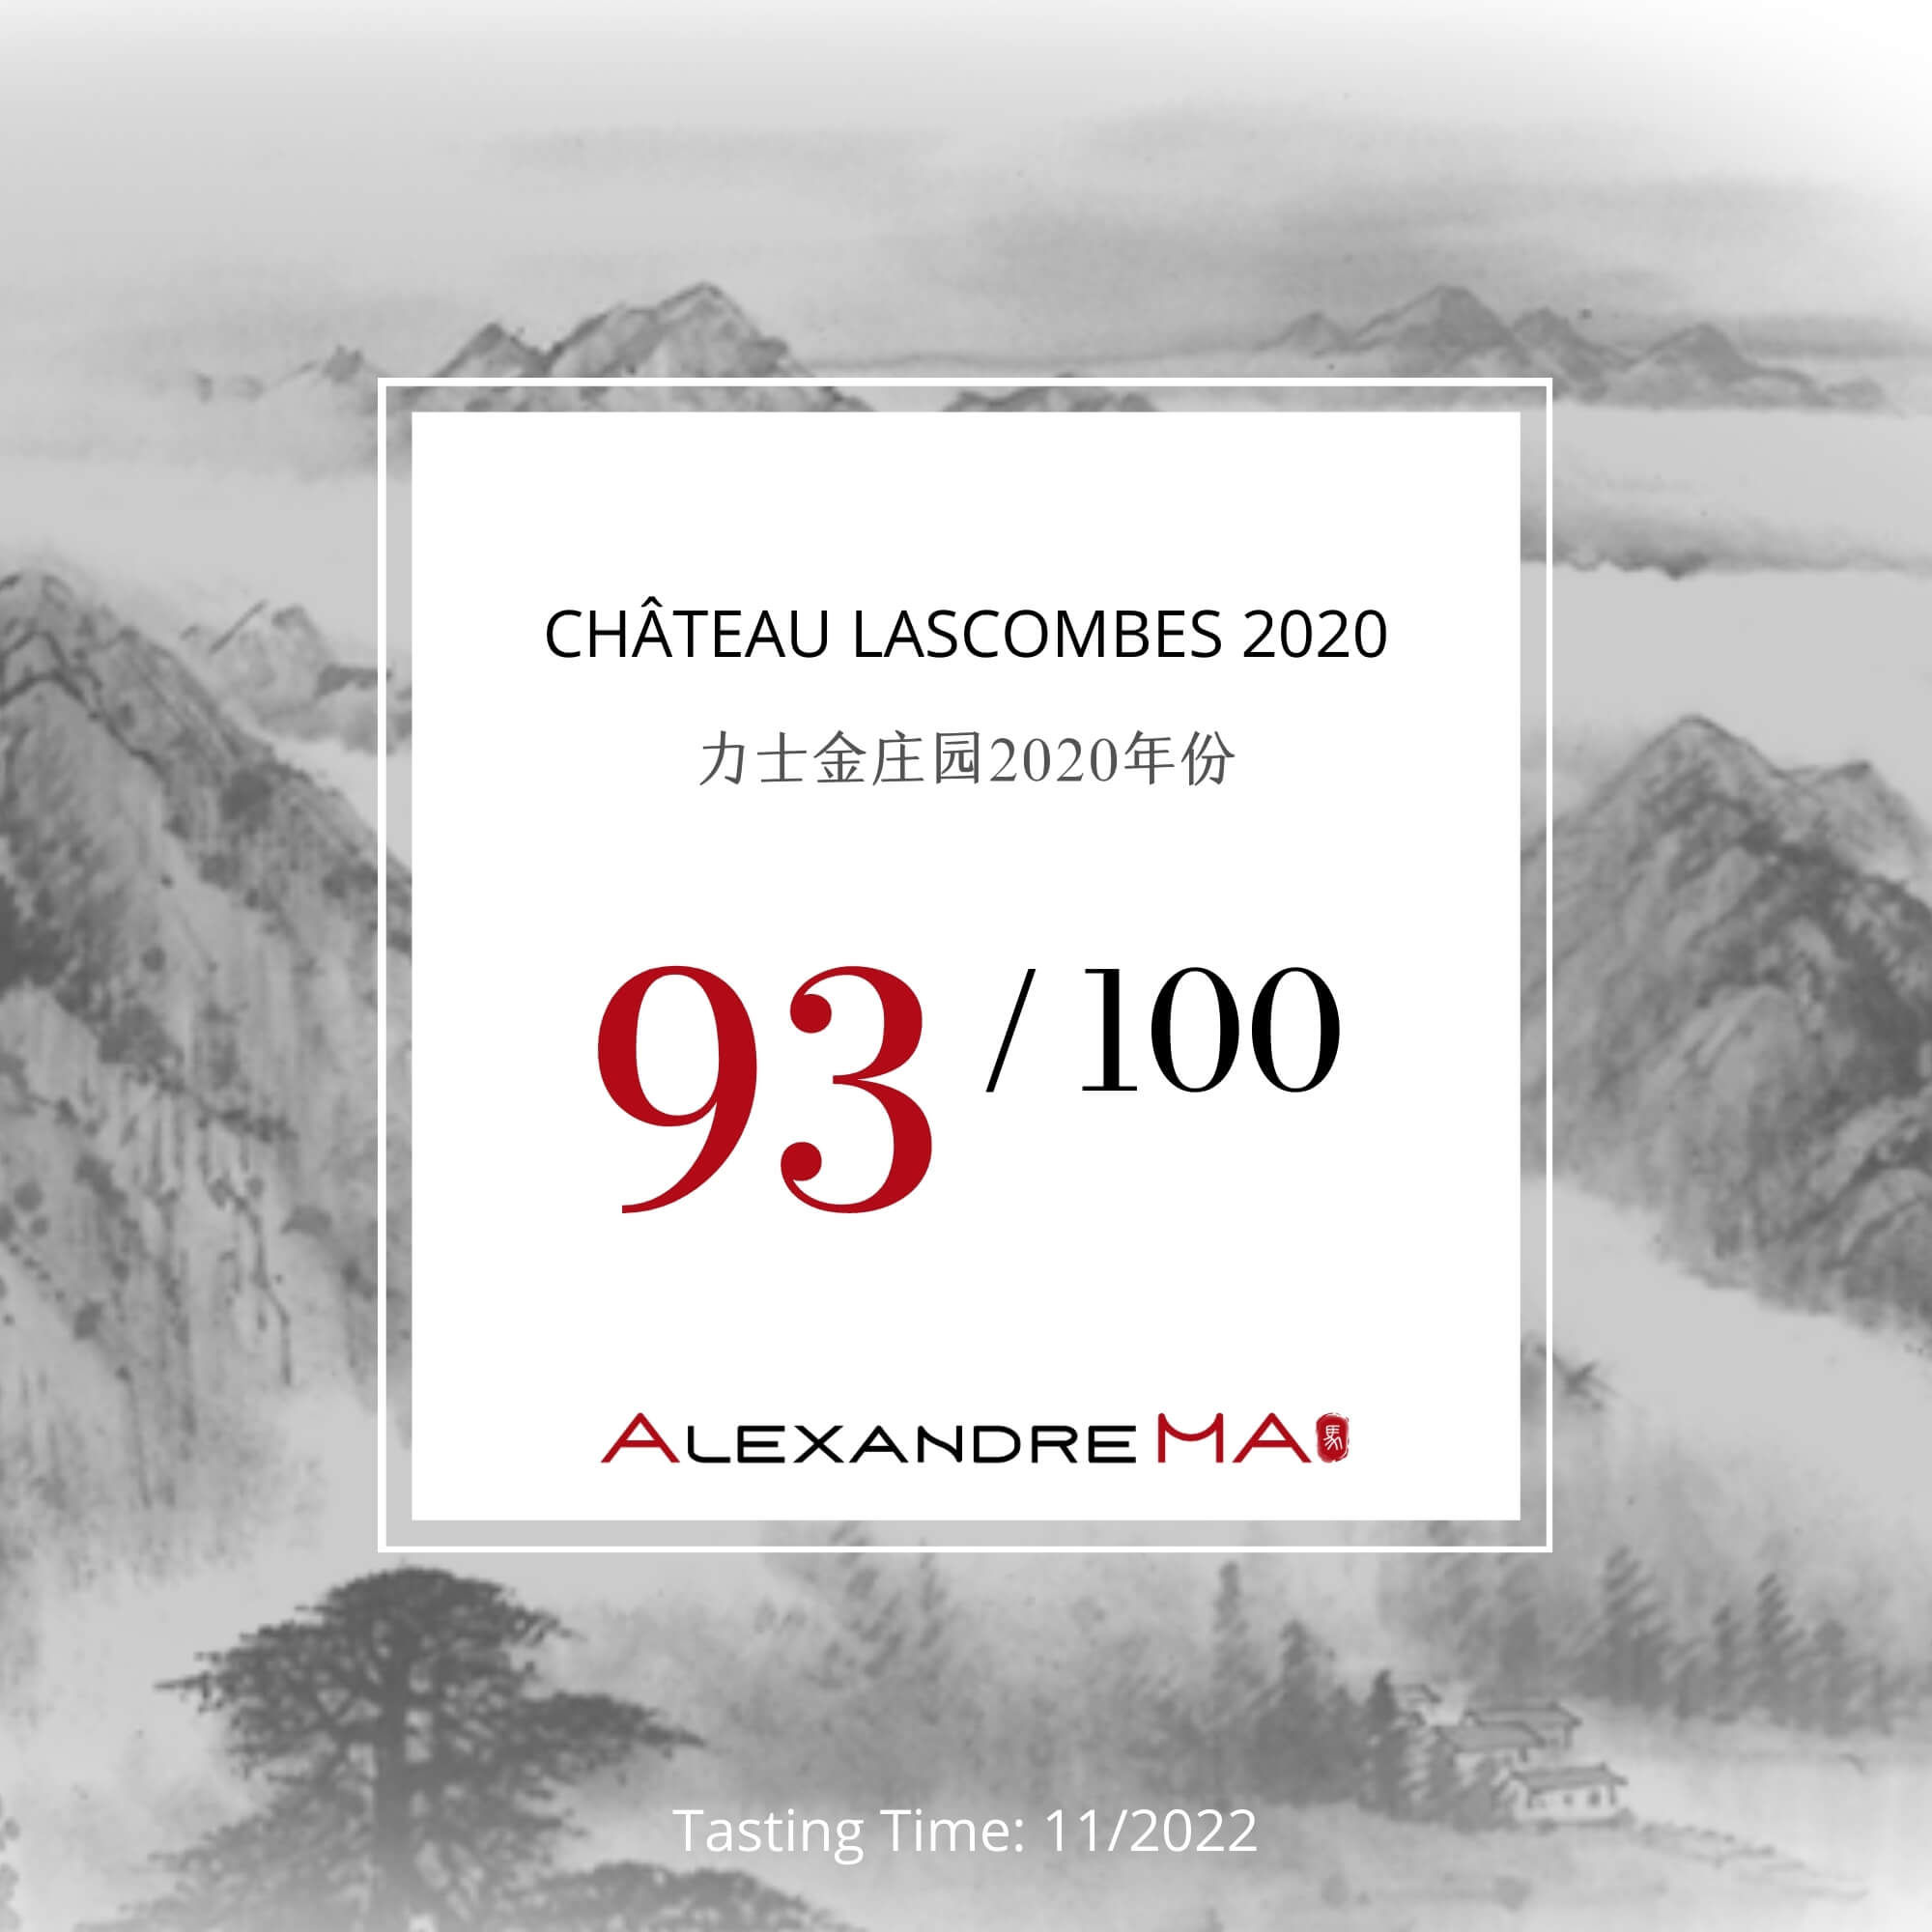 Château Lascombes 2020 - Alexandre MA